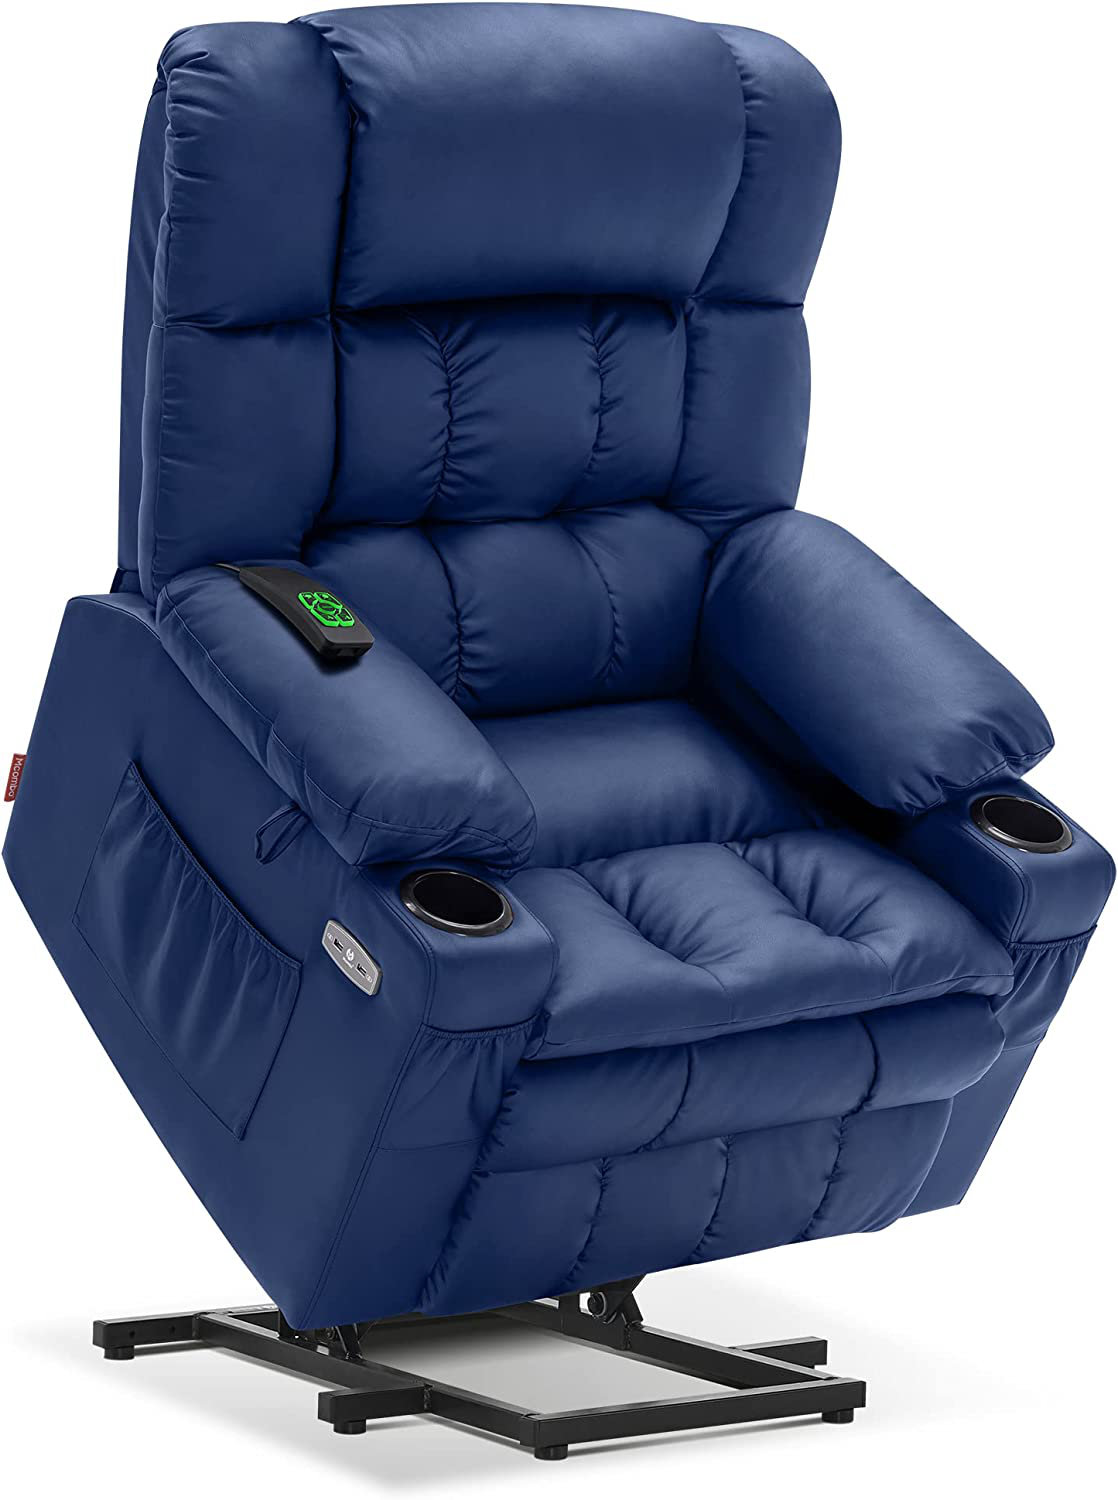 https://assets.wfcdn.com/im/77509365/compr-r85/2343/234343246/mcombo-upholstered-heated-massage-chair.jpg